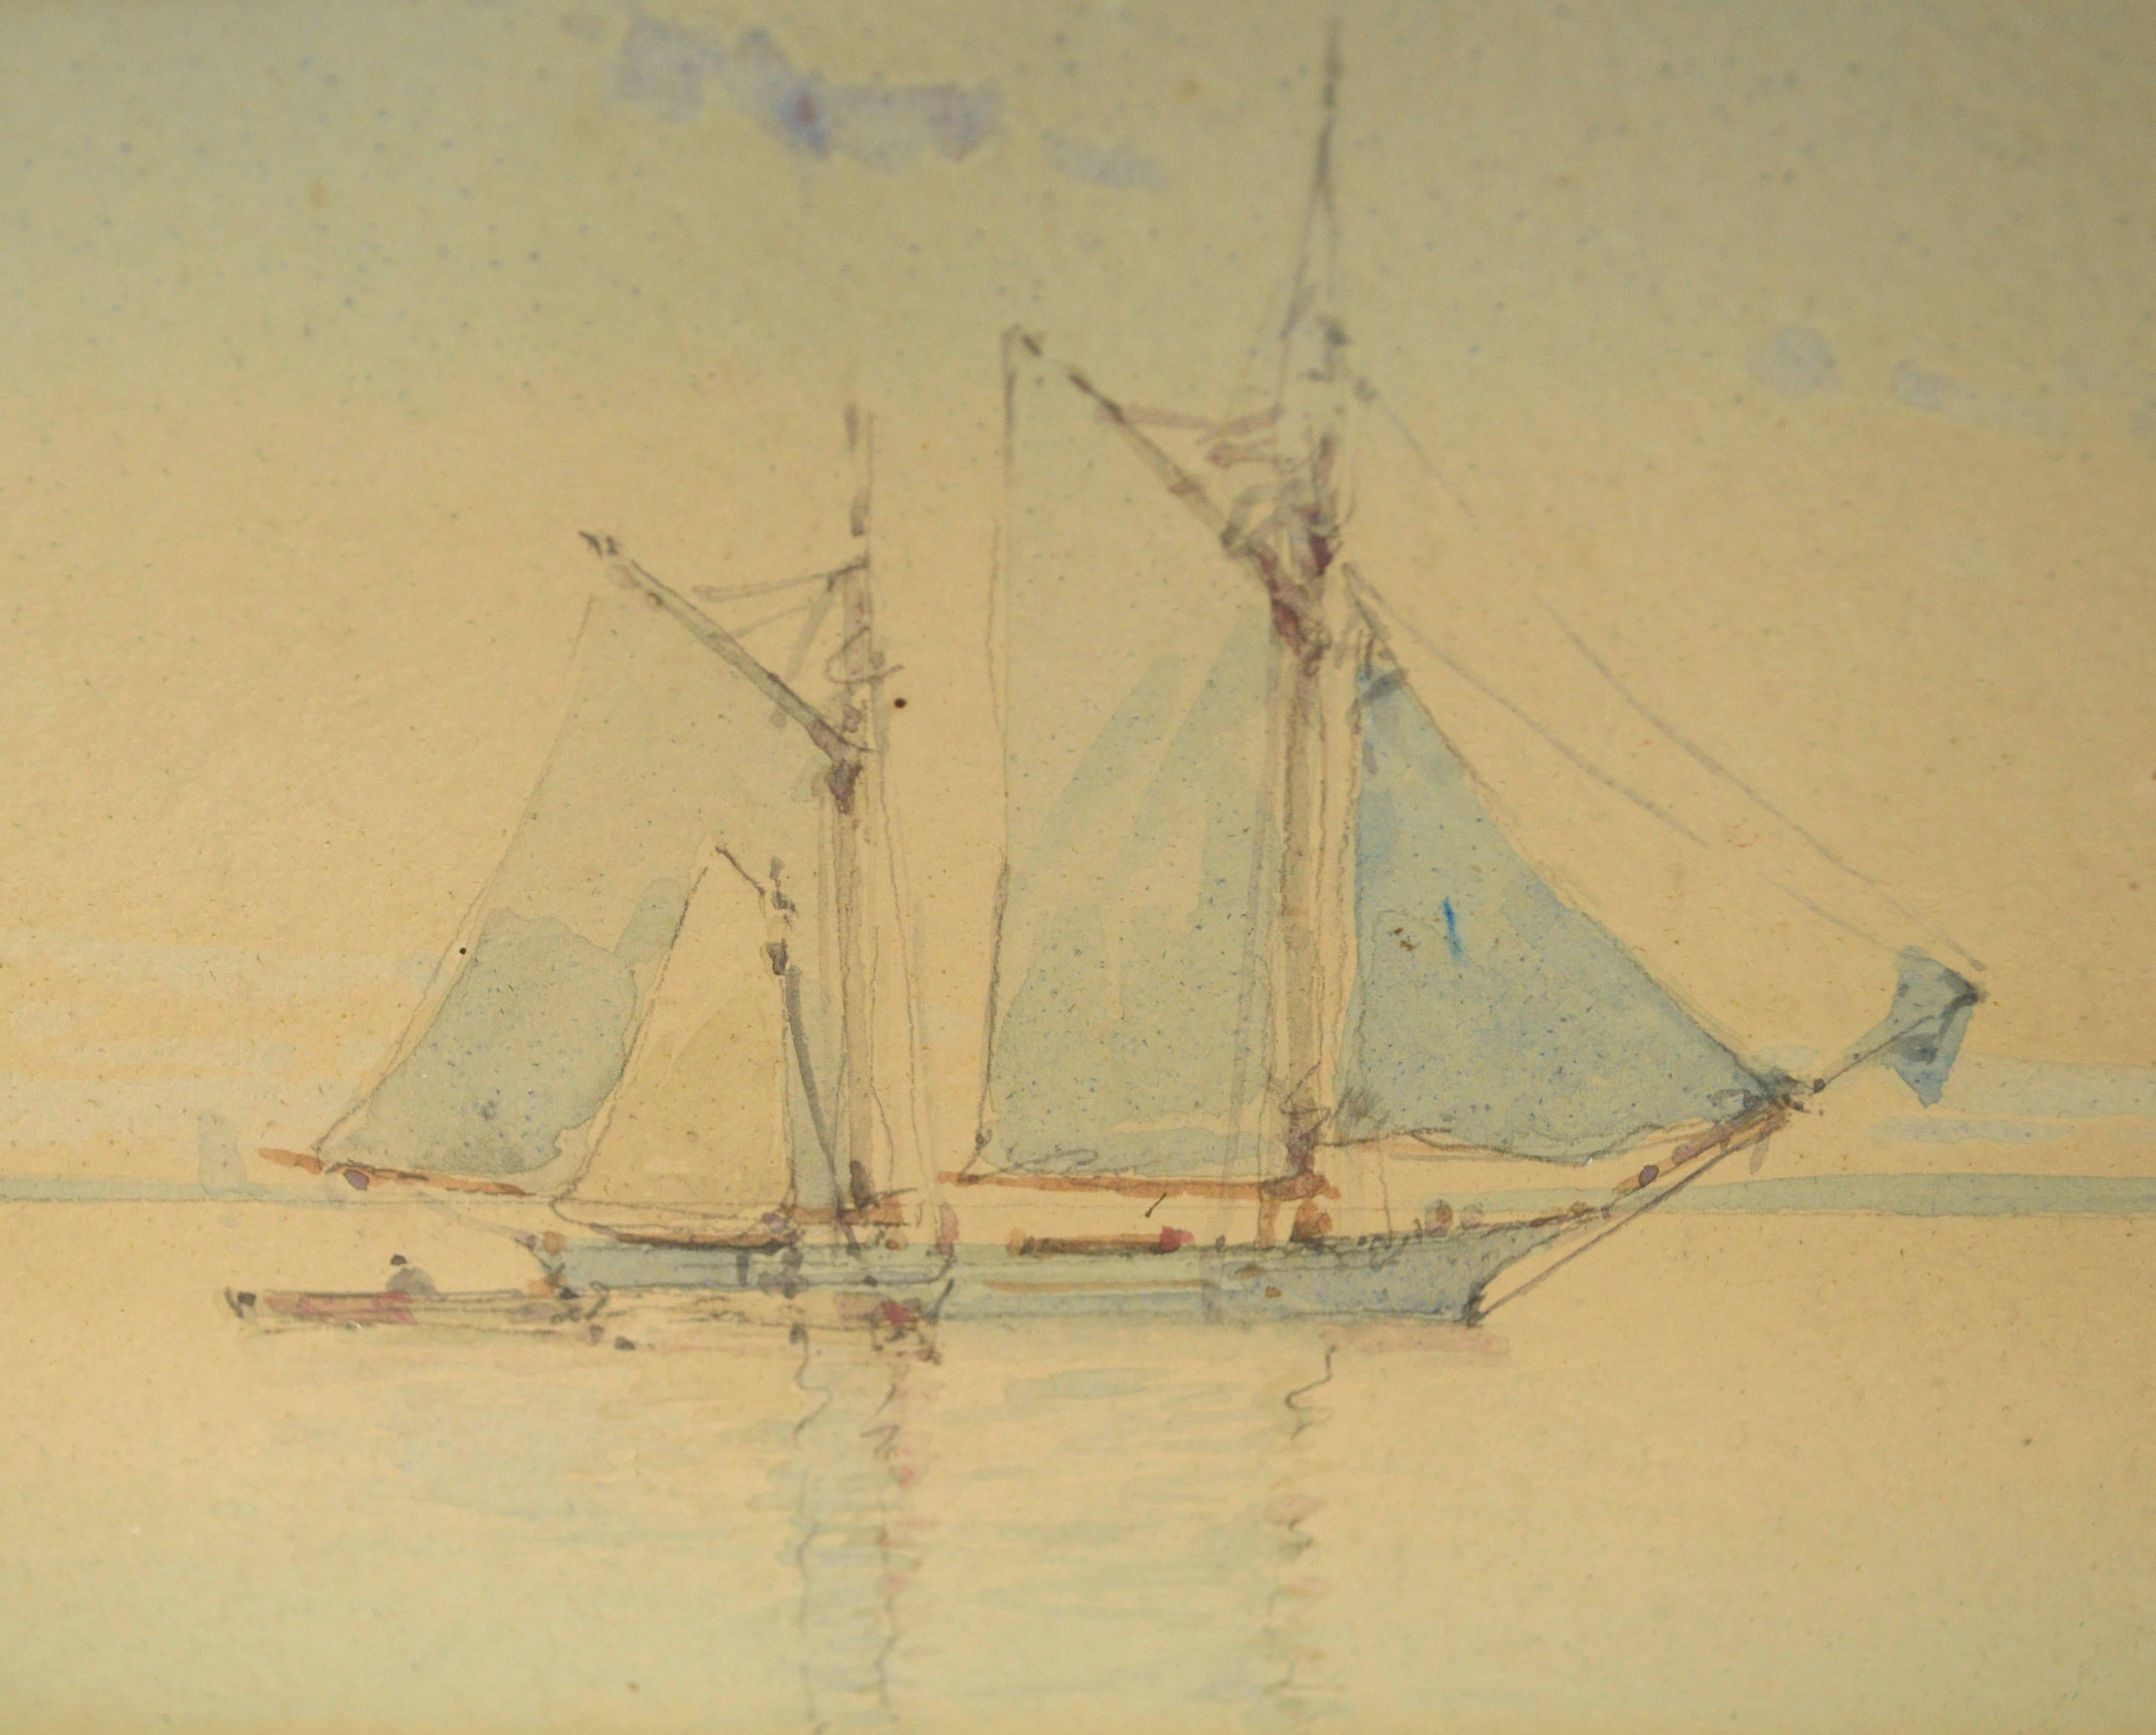 Schooners at Sail, maritime Aquarell-Seelandschaft des frühen 20. Jahrhunderts  (Amerikanischer Impressionismus), Art, von W.K. Willis